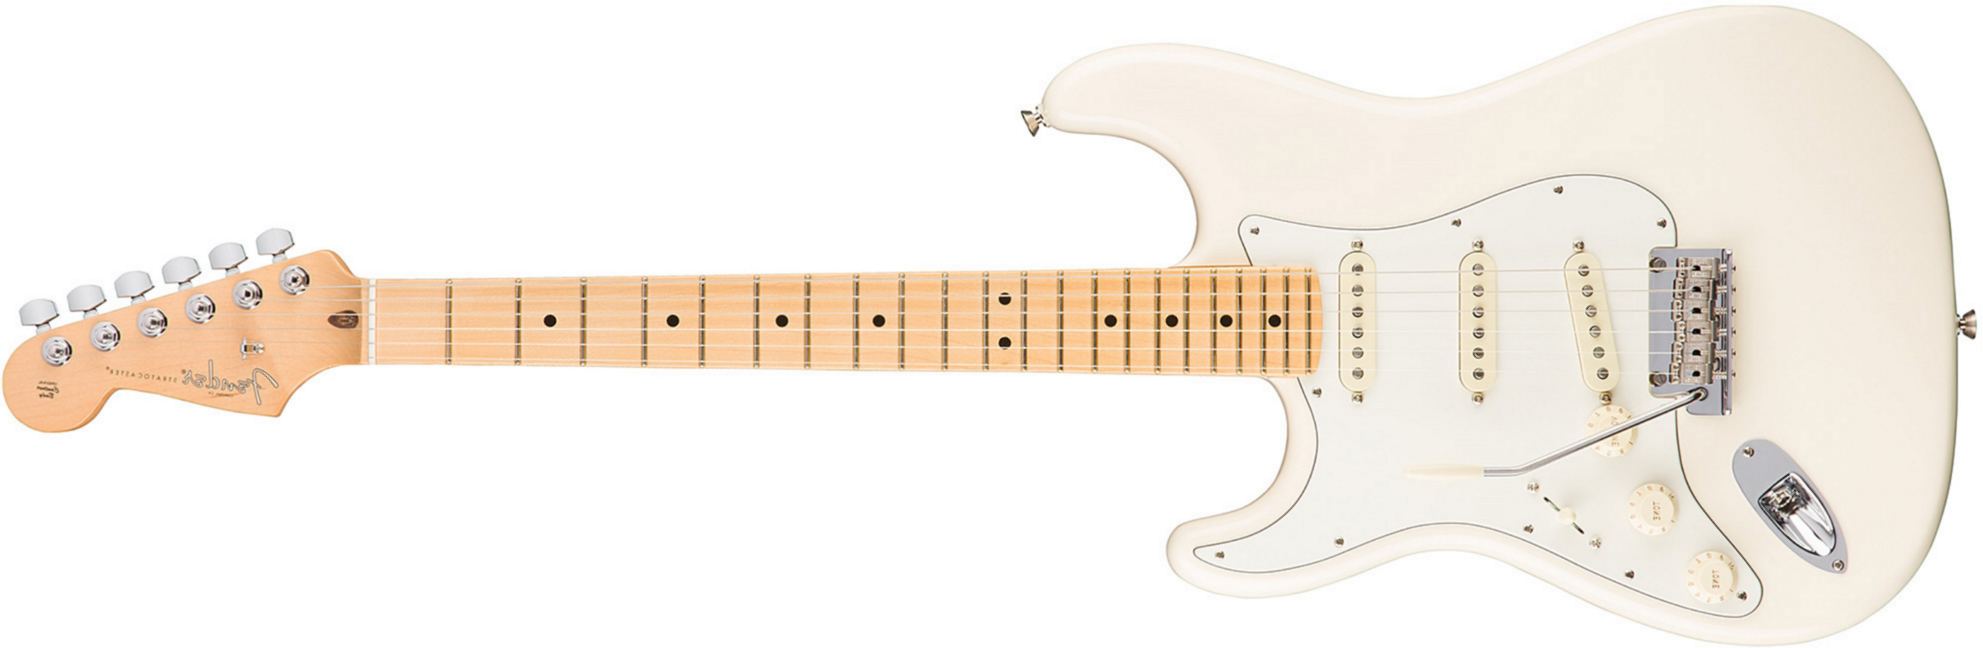 Fender Strat American Professional Lh Usa Gaucher 3s Mn - Olympic White - Linkshandige elektrische gitaar - Main picture